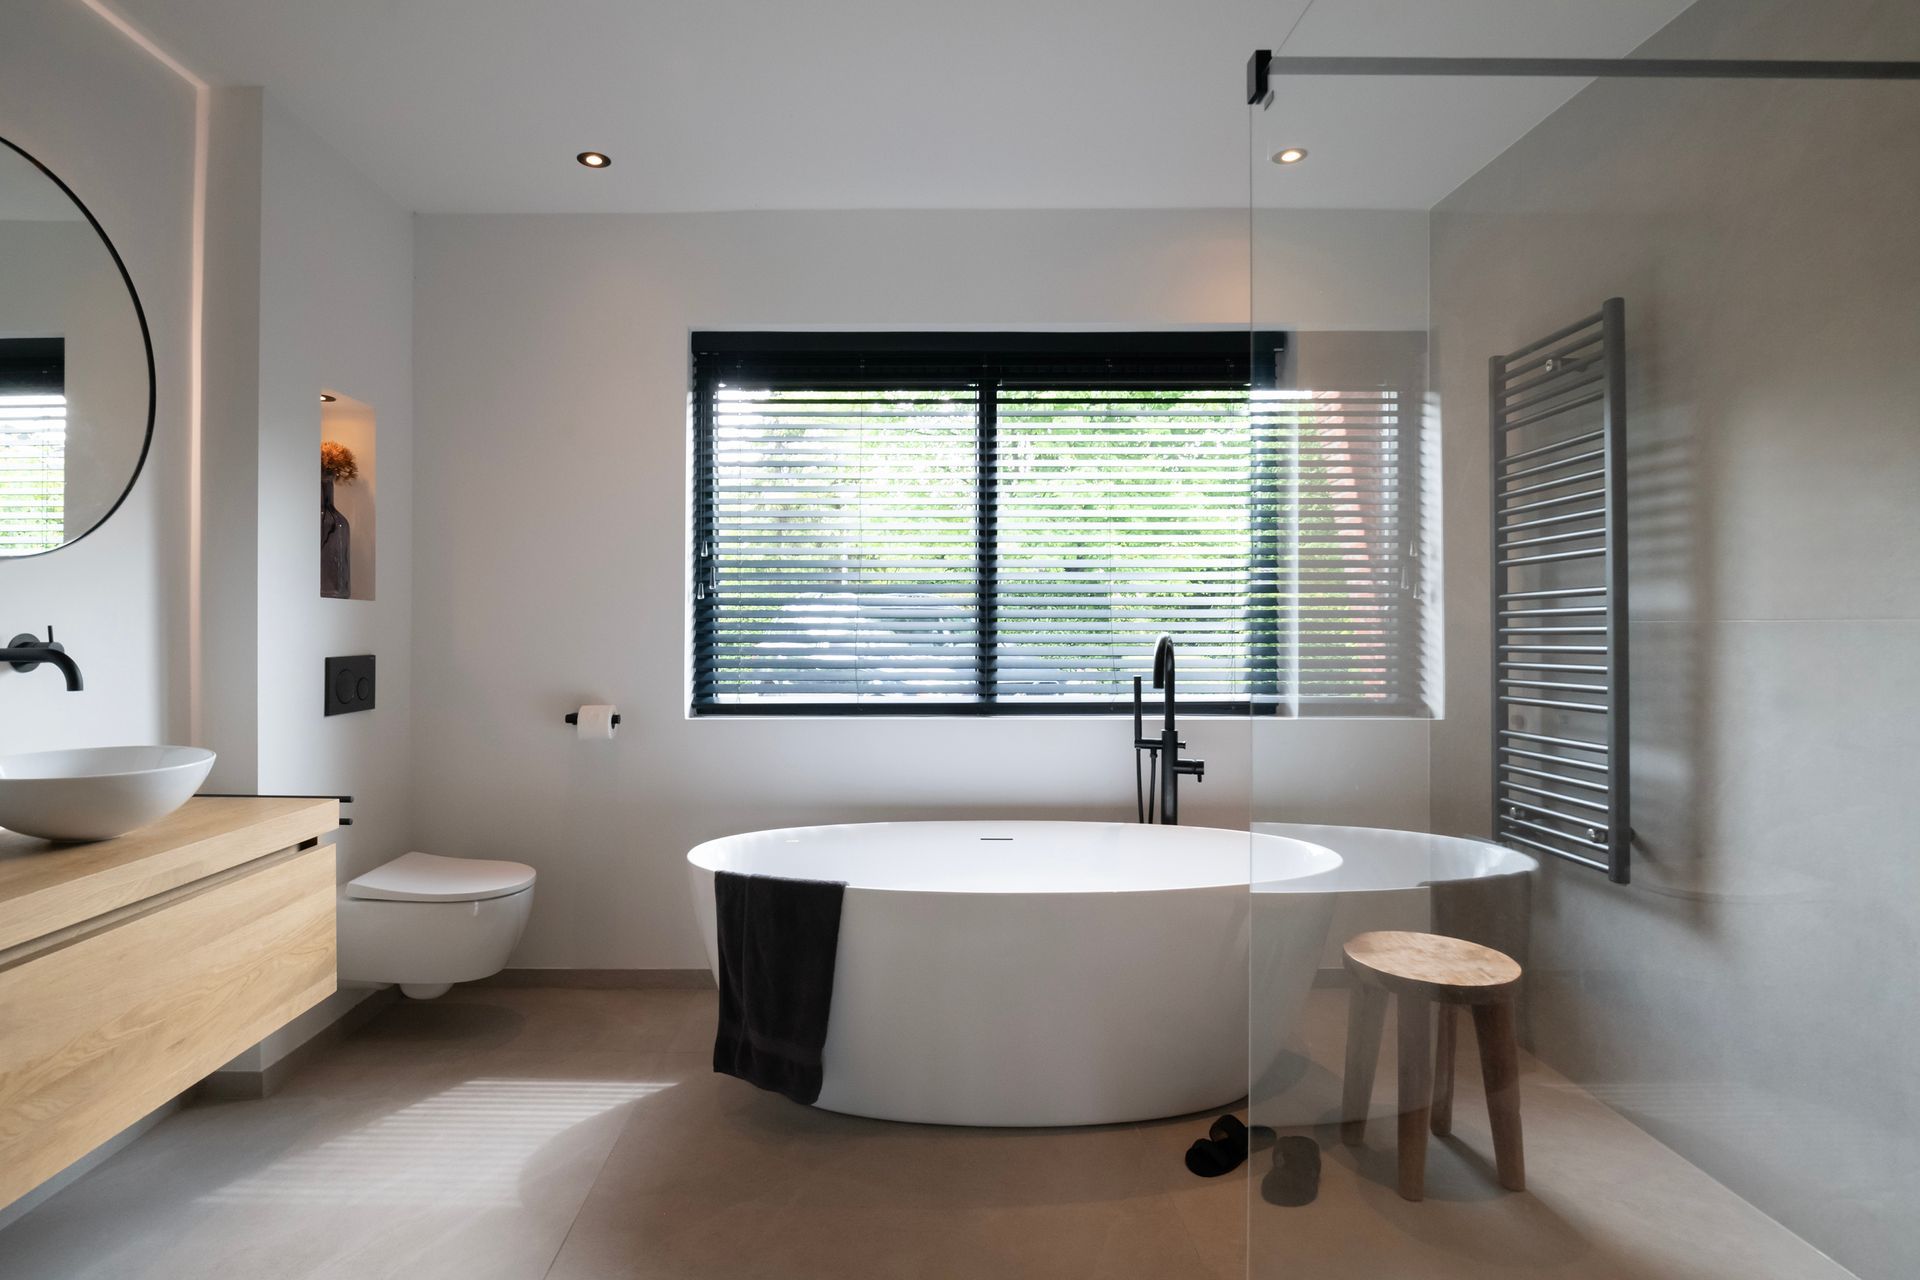 Een totale badkamer renovatie en modernisering in een vrijstaande woning in Steenbergen zorgt voor een luxe spa gevoel in huis.